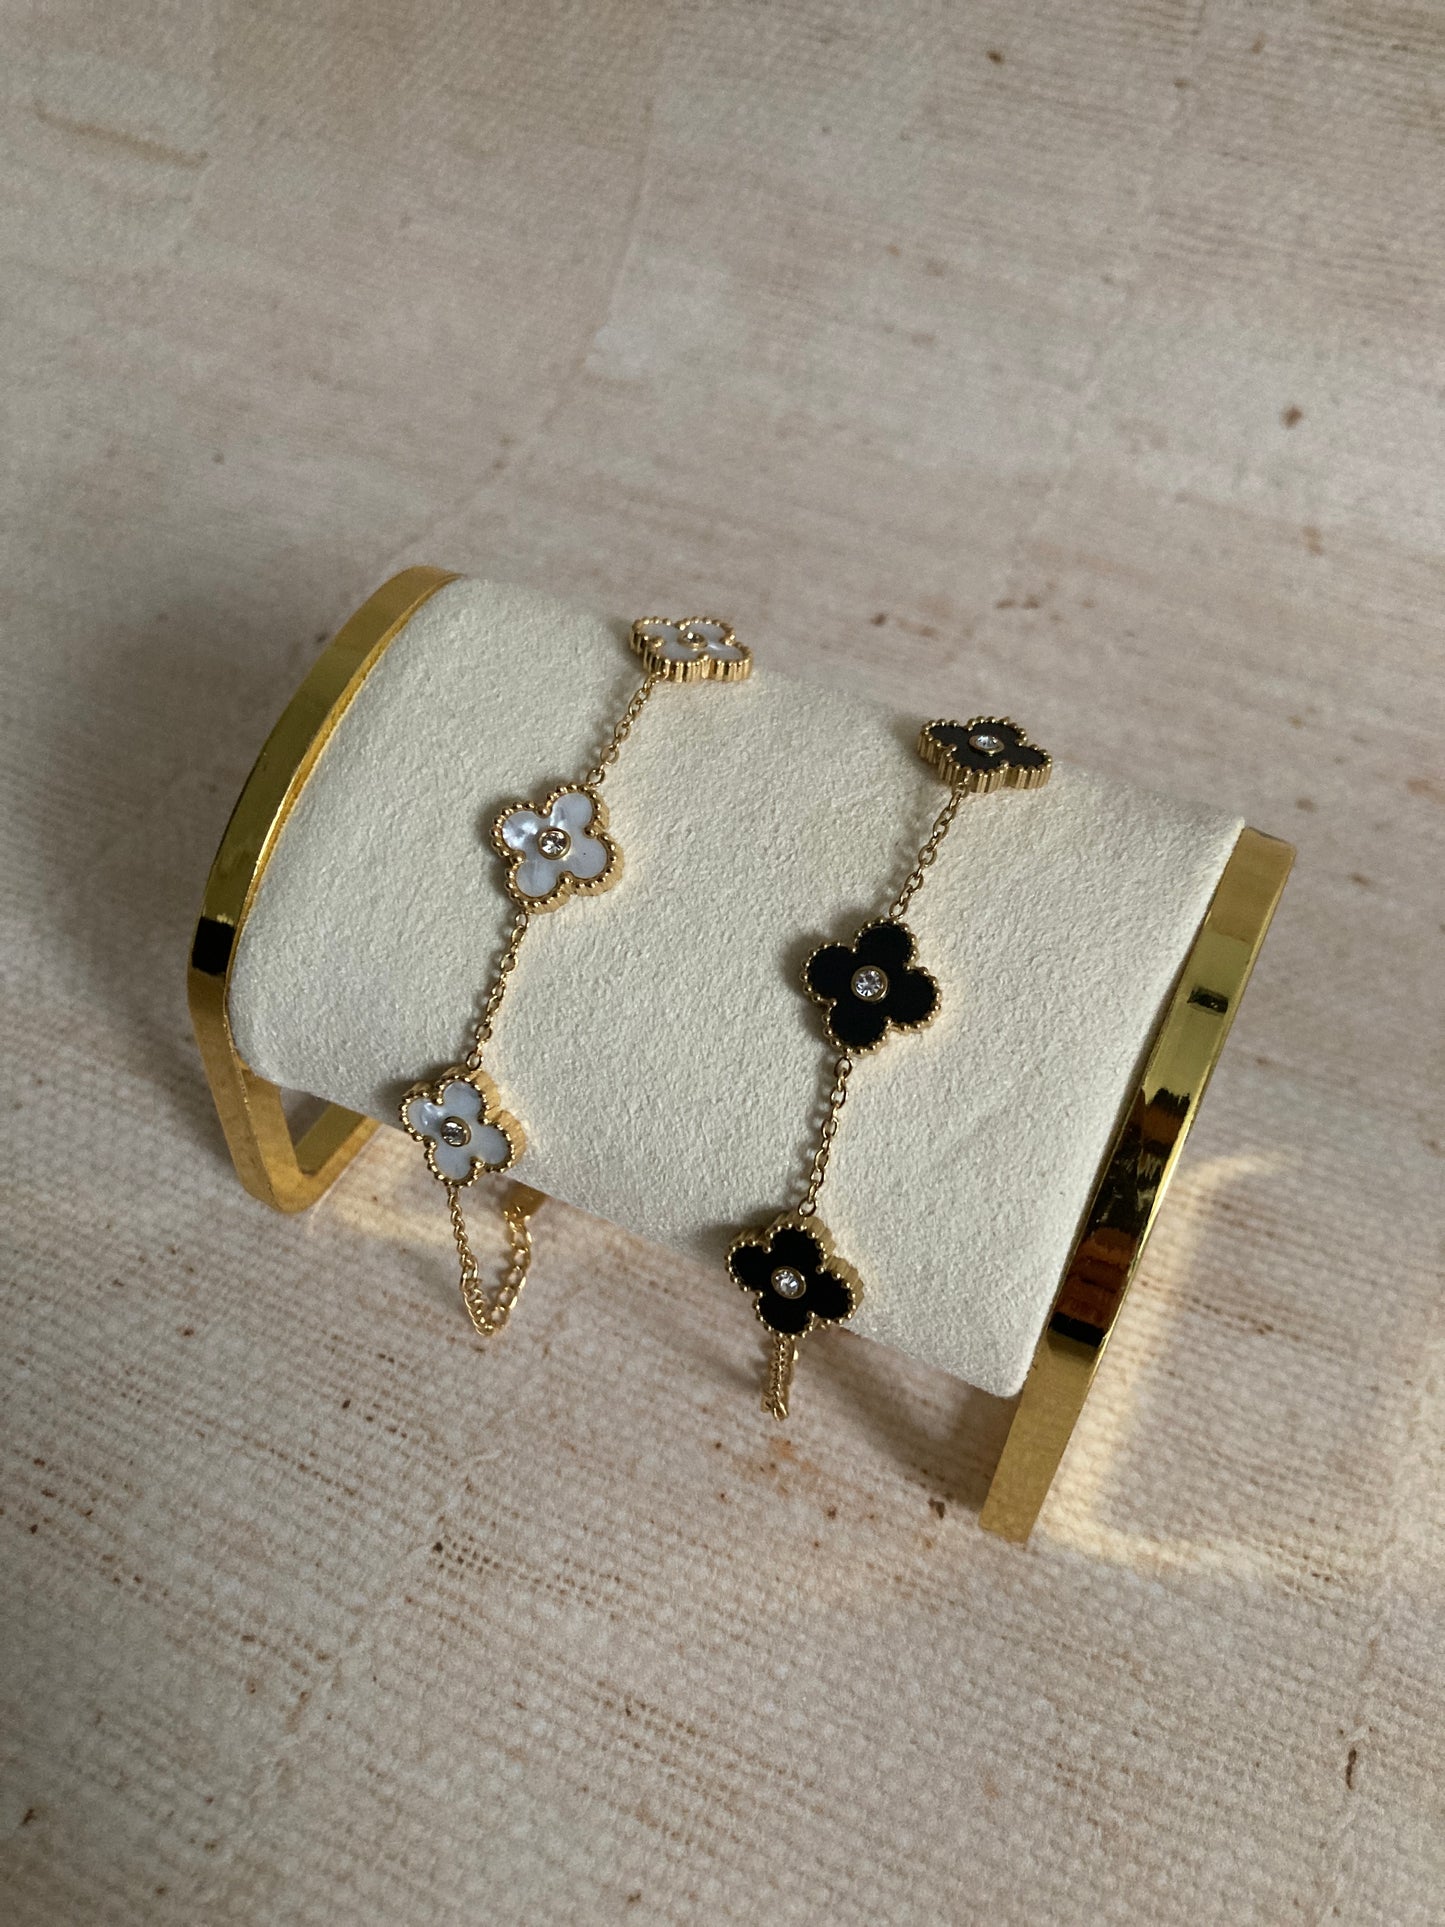 Black 18K Gold Plated Clover Flower Bracelet (ST922)